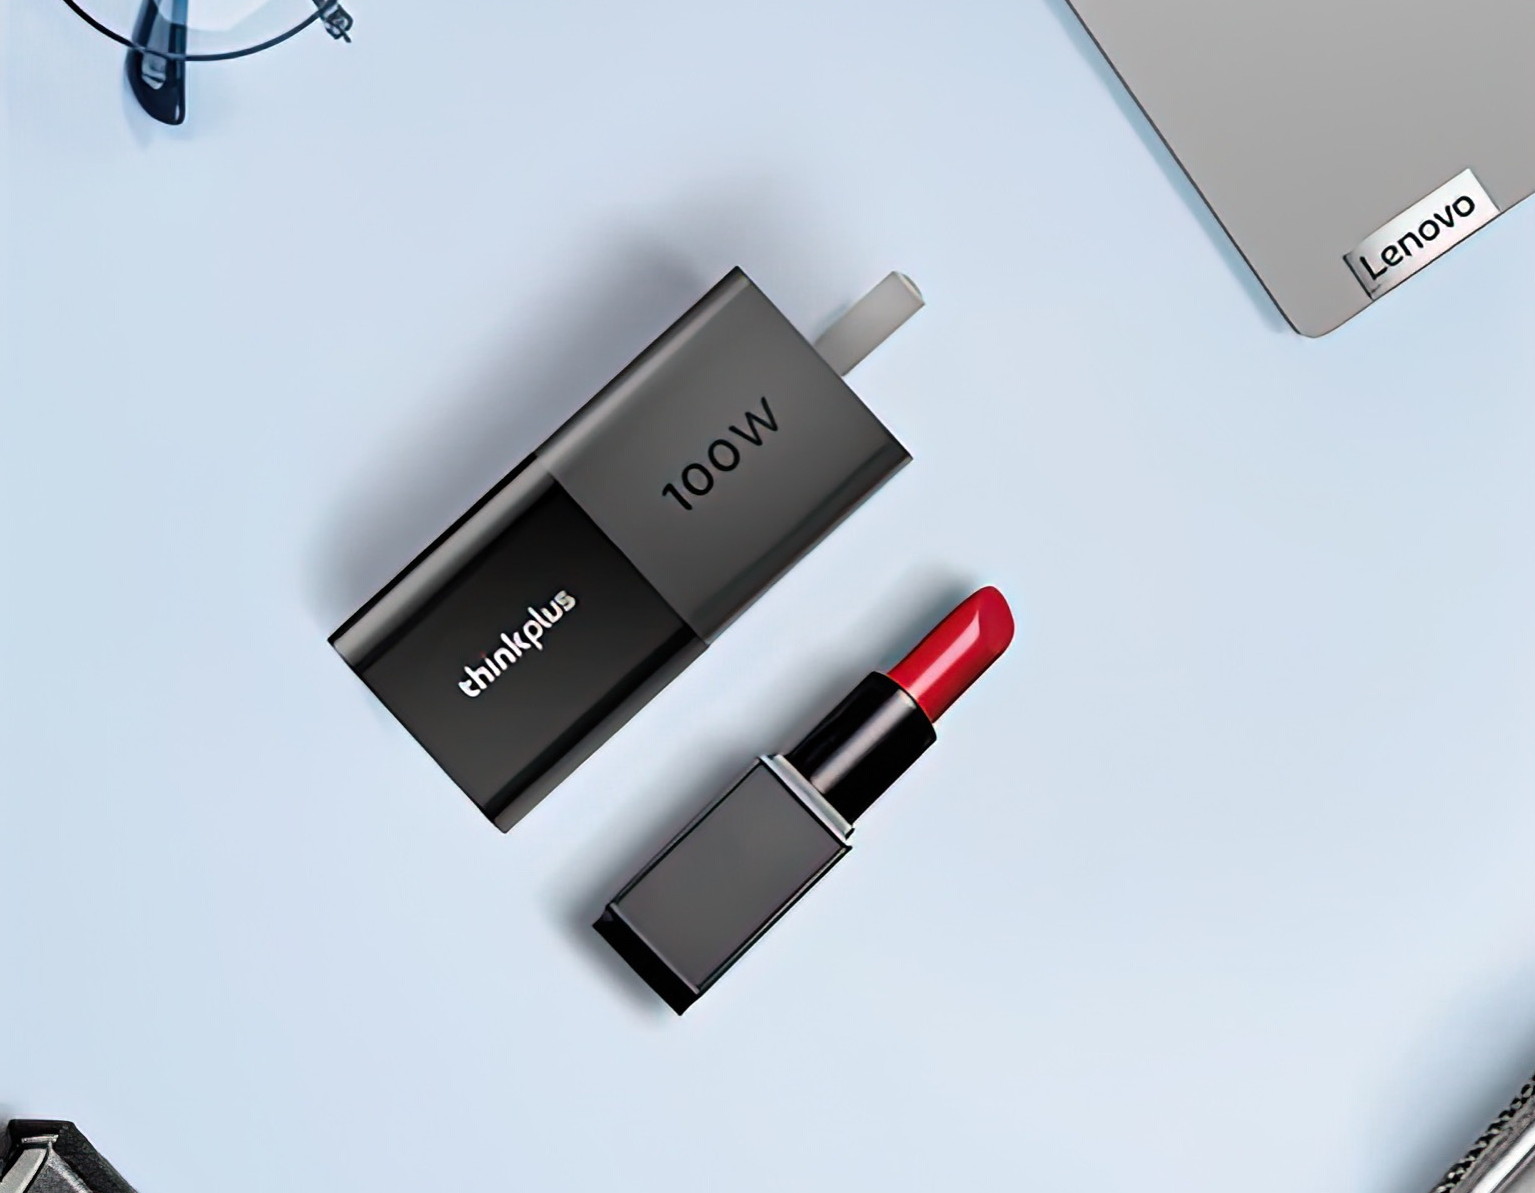 Lenovo presenta el cargador Thinkplus Lipstick 100W GaN con un formato  compacto -  News